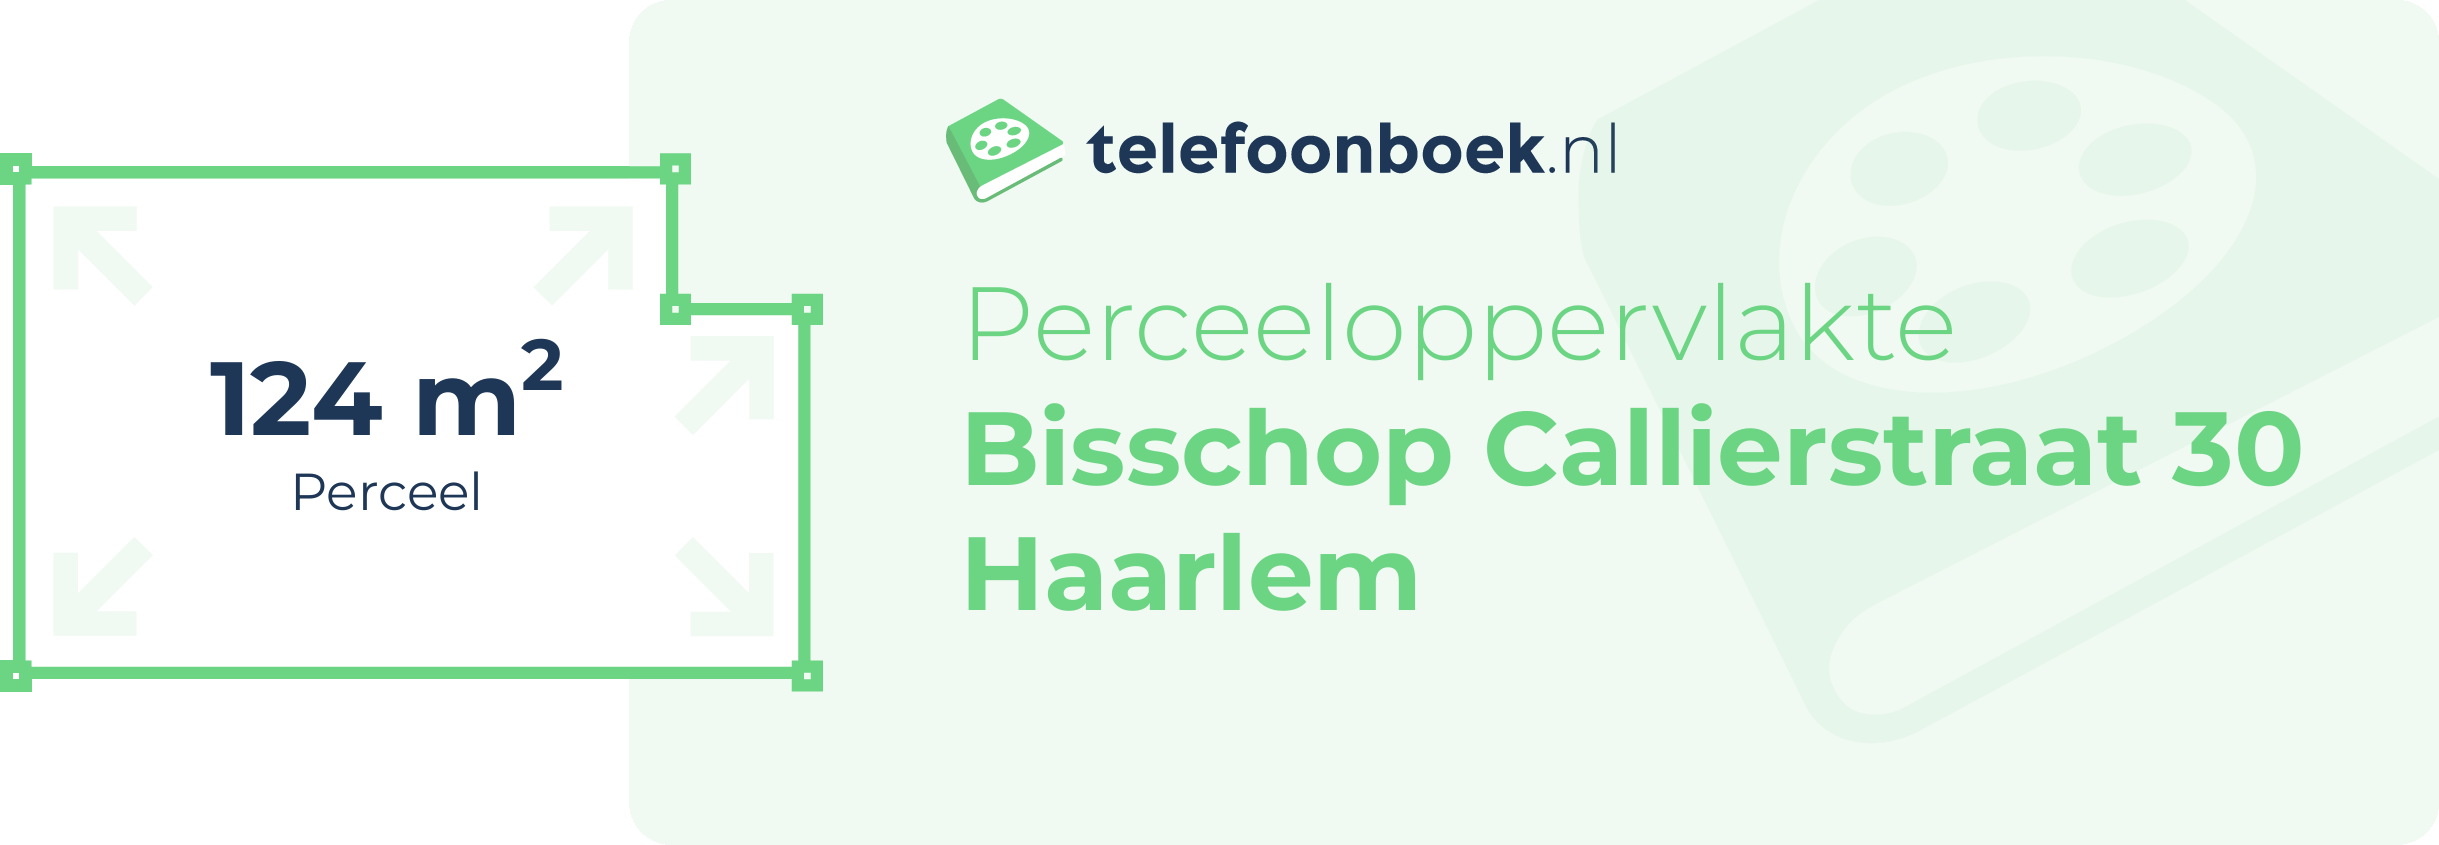 Perceeloppervlakte Bisschop Callierstraat 30 Haarlem